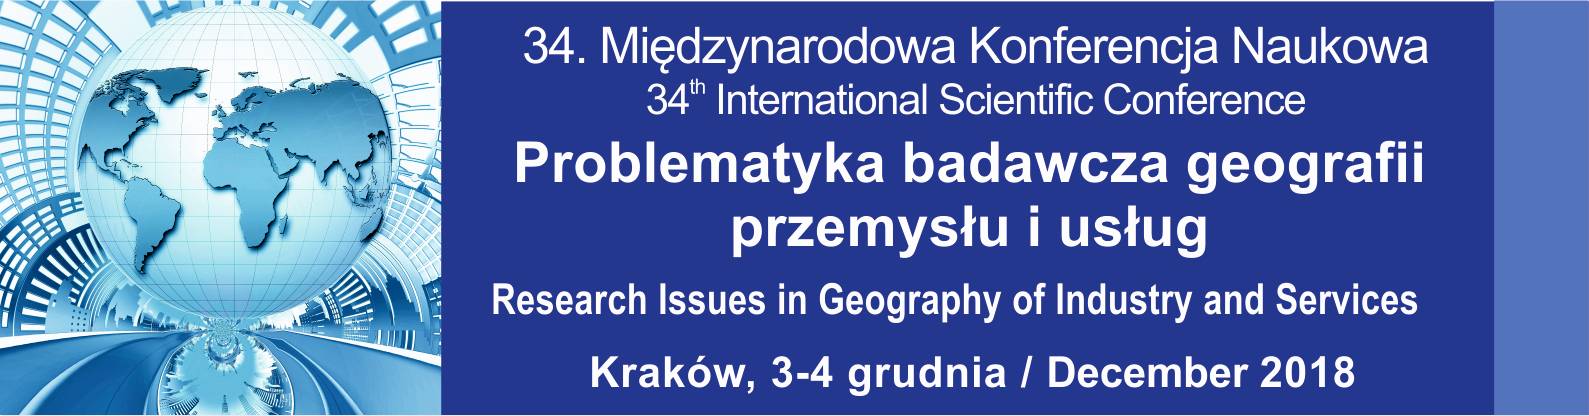 34_miedzynarodowa_konferencja_naukowa_problematyka_badawcza_geografii_przemyslu_i_uslug